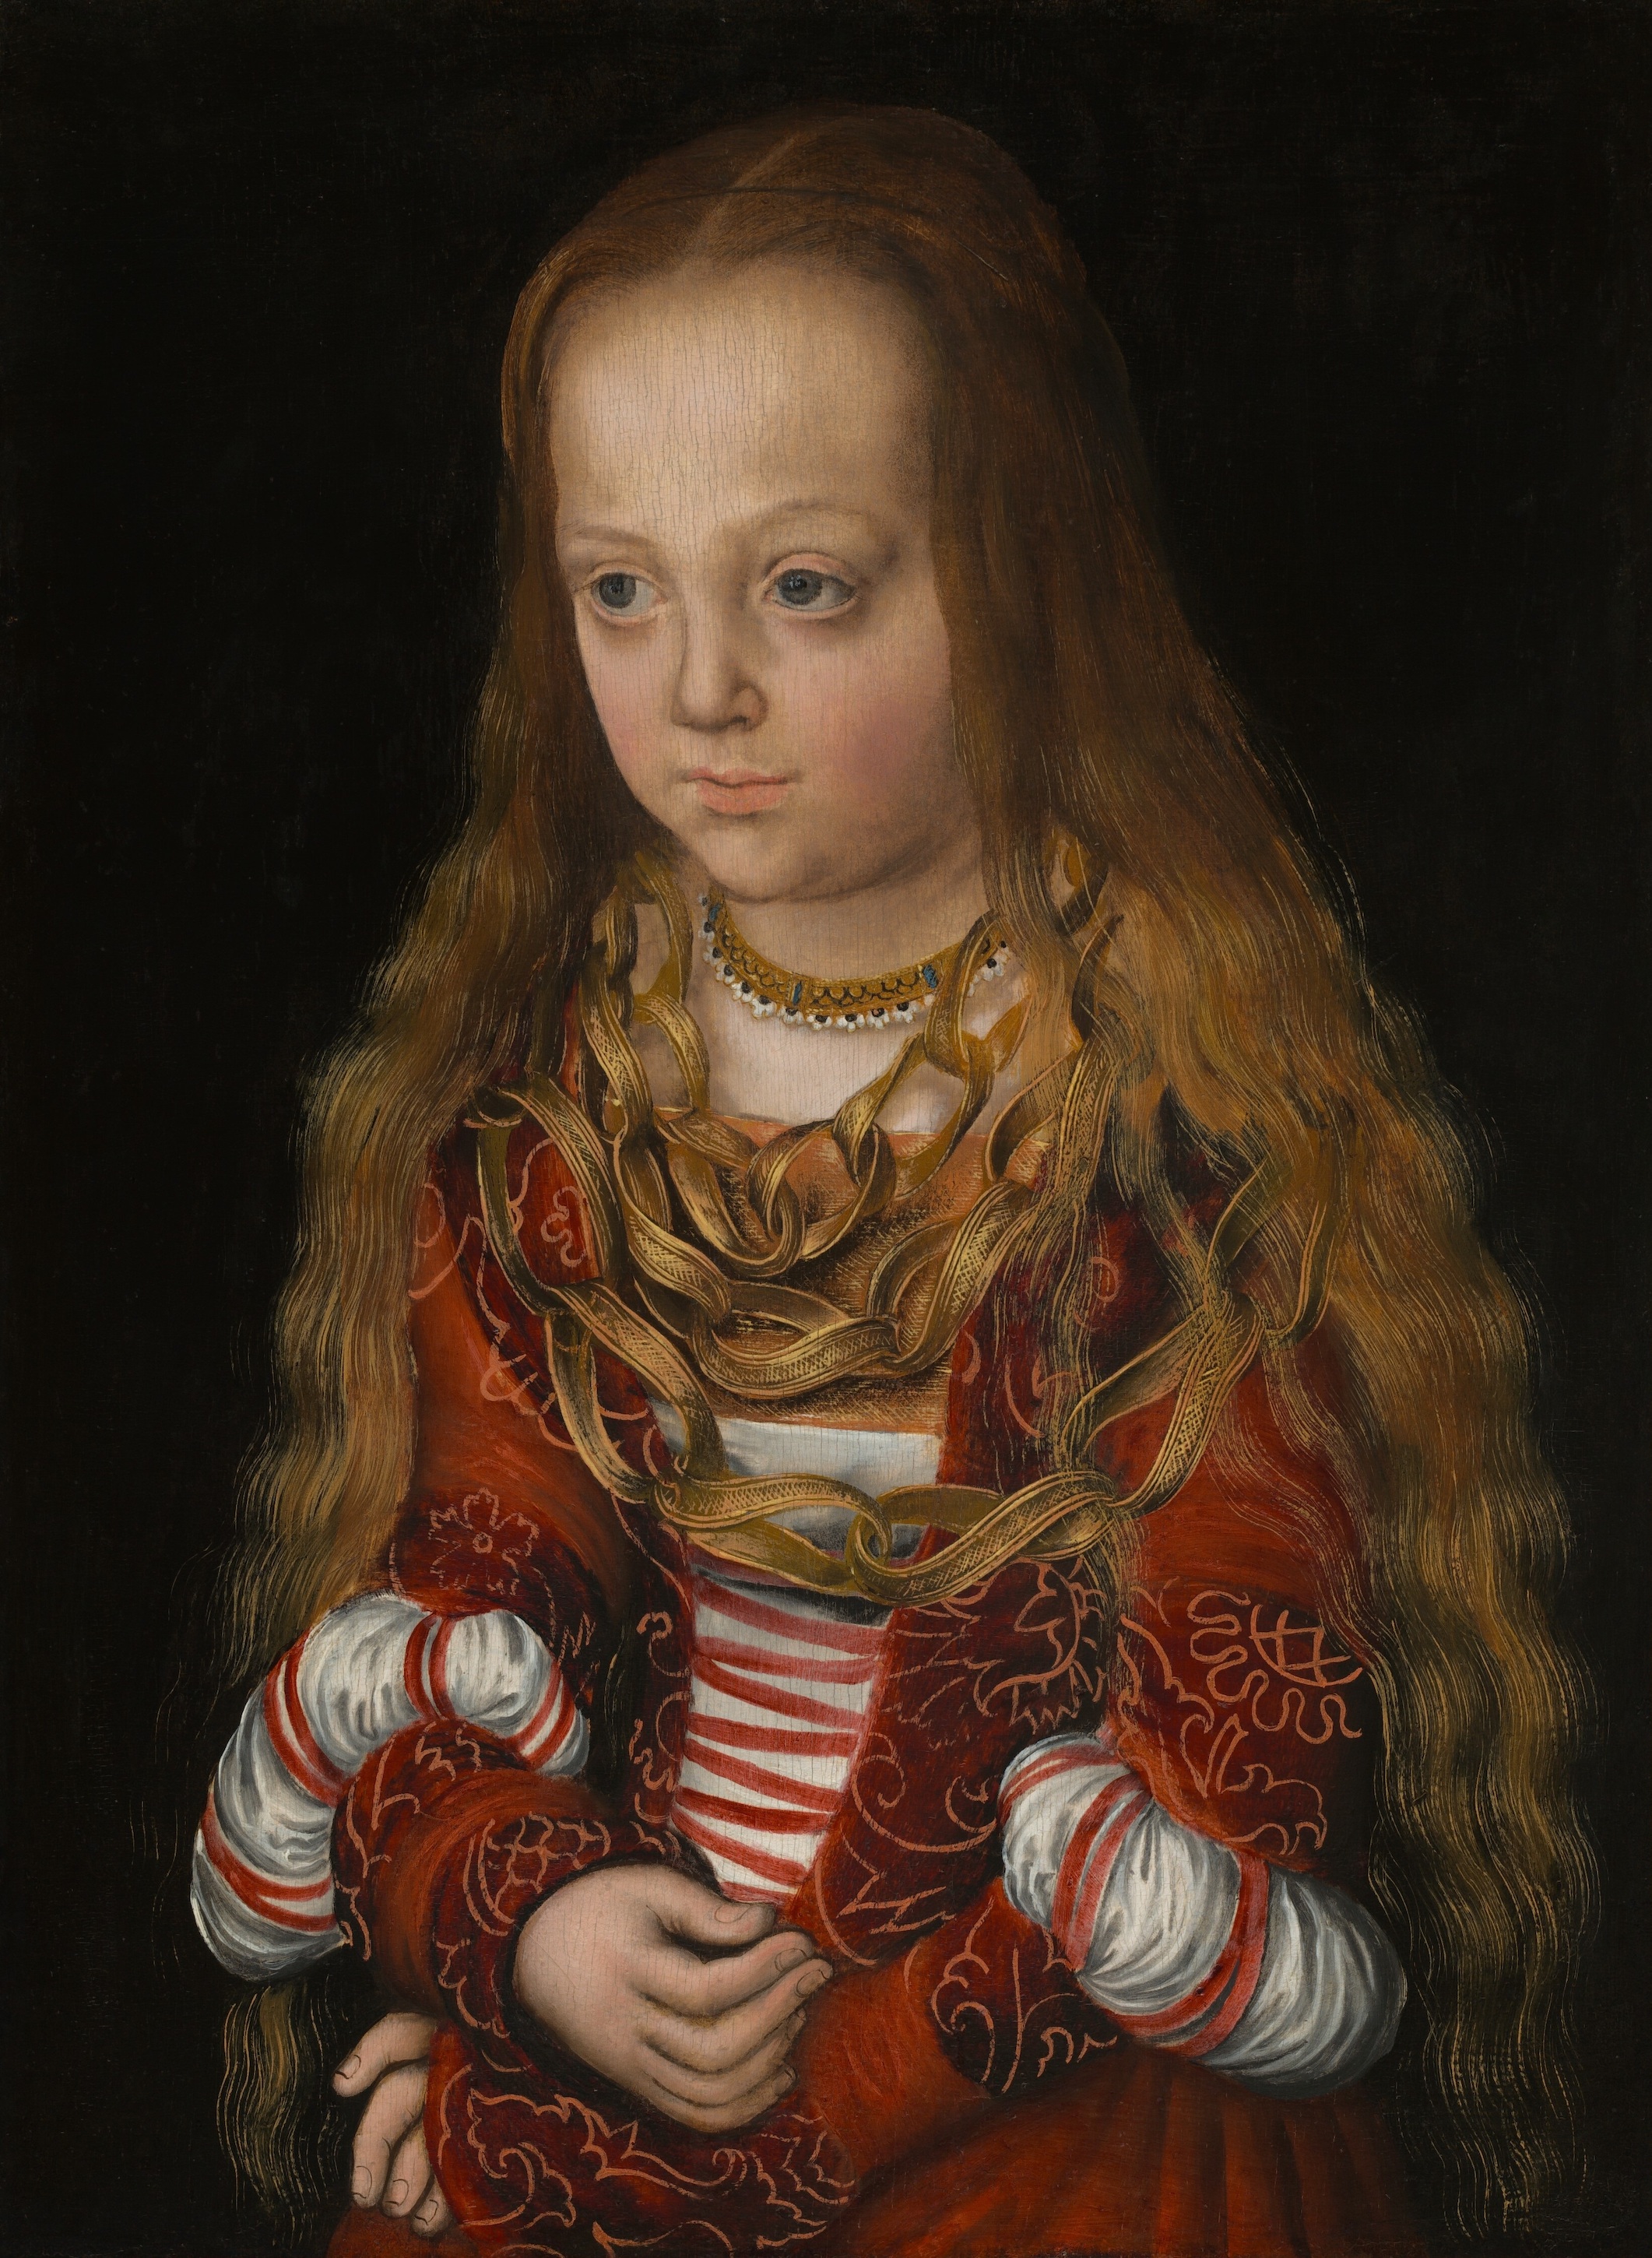 Princesa de Sajonia by Lucas Cranach el Viejo - c. 1517 National Gallery of Art